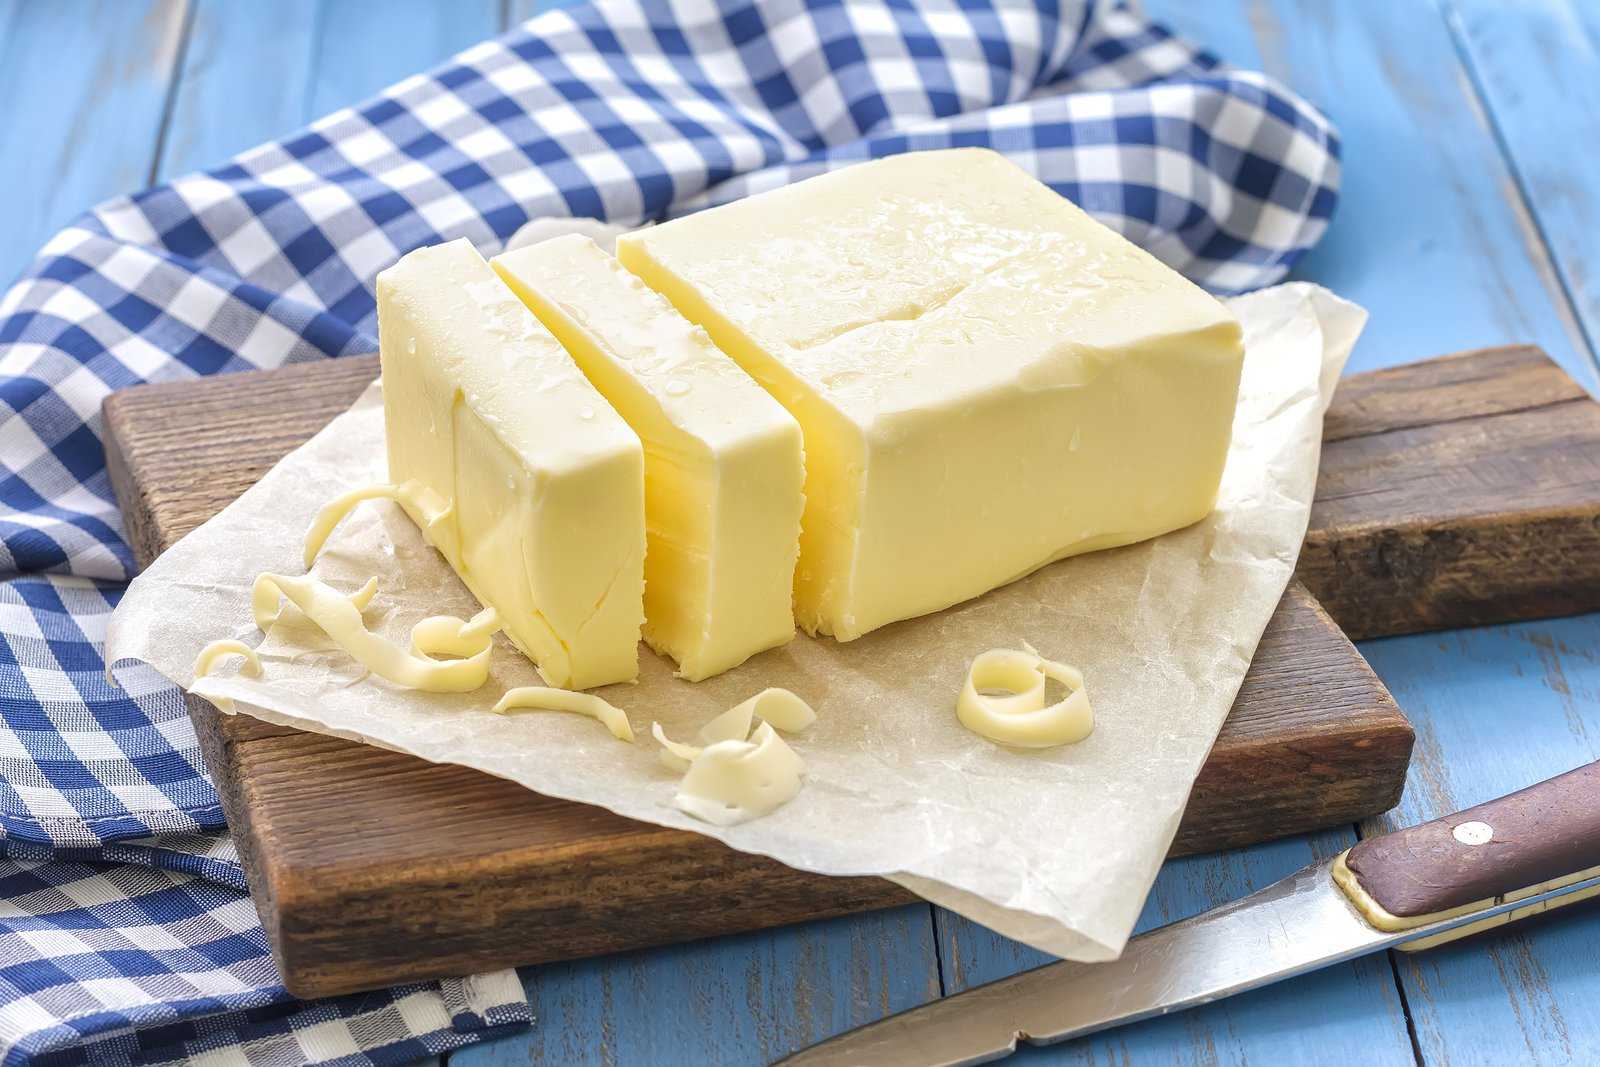 Масло для жарки низкокалорийное. топ - 8 полезных видов растительного масла для пп- рациона: особенности использования и преимущества каждого из них | здоровье человека